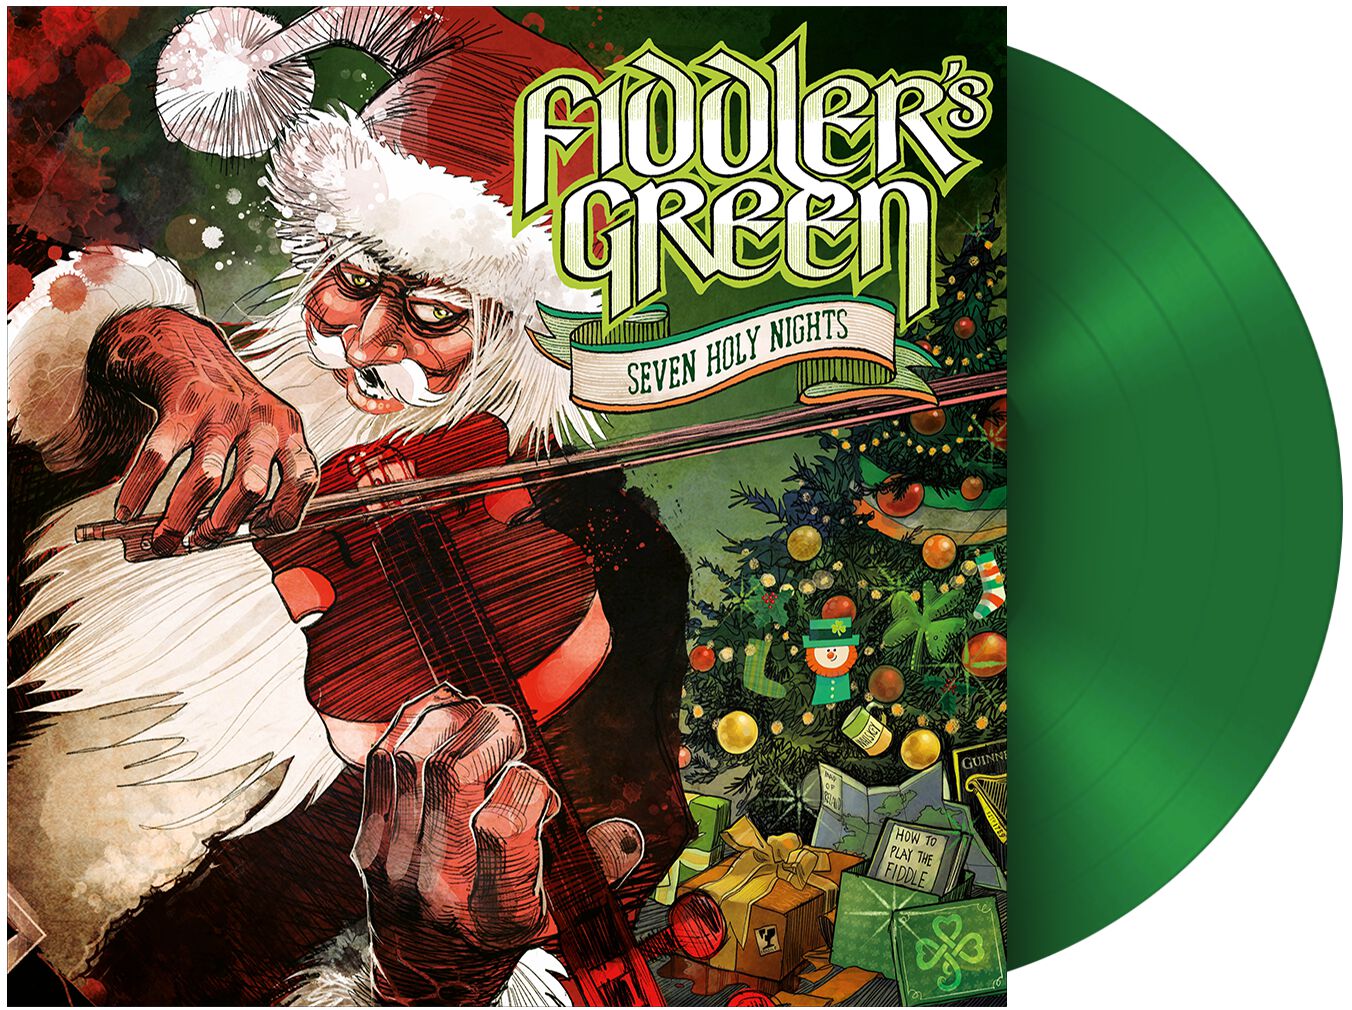 Fiddler's Green Seven holy nights LP green